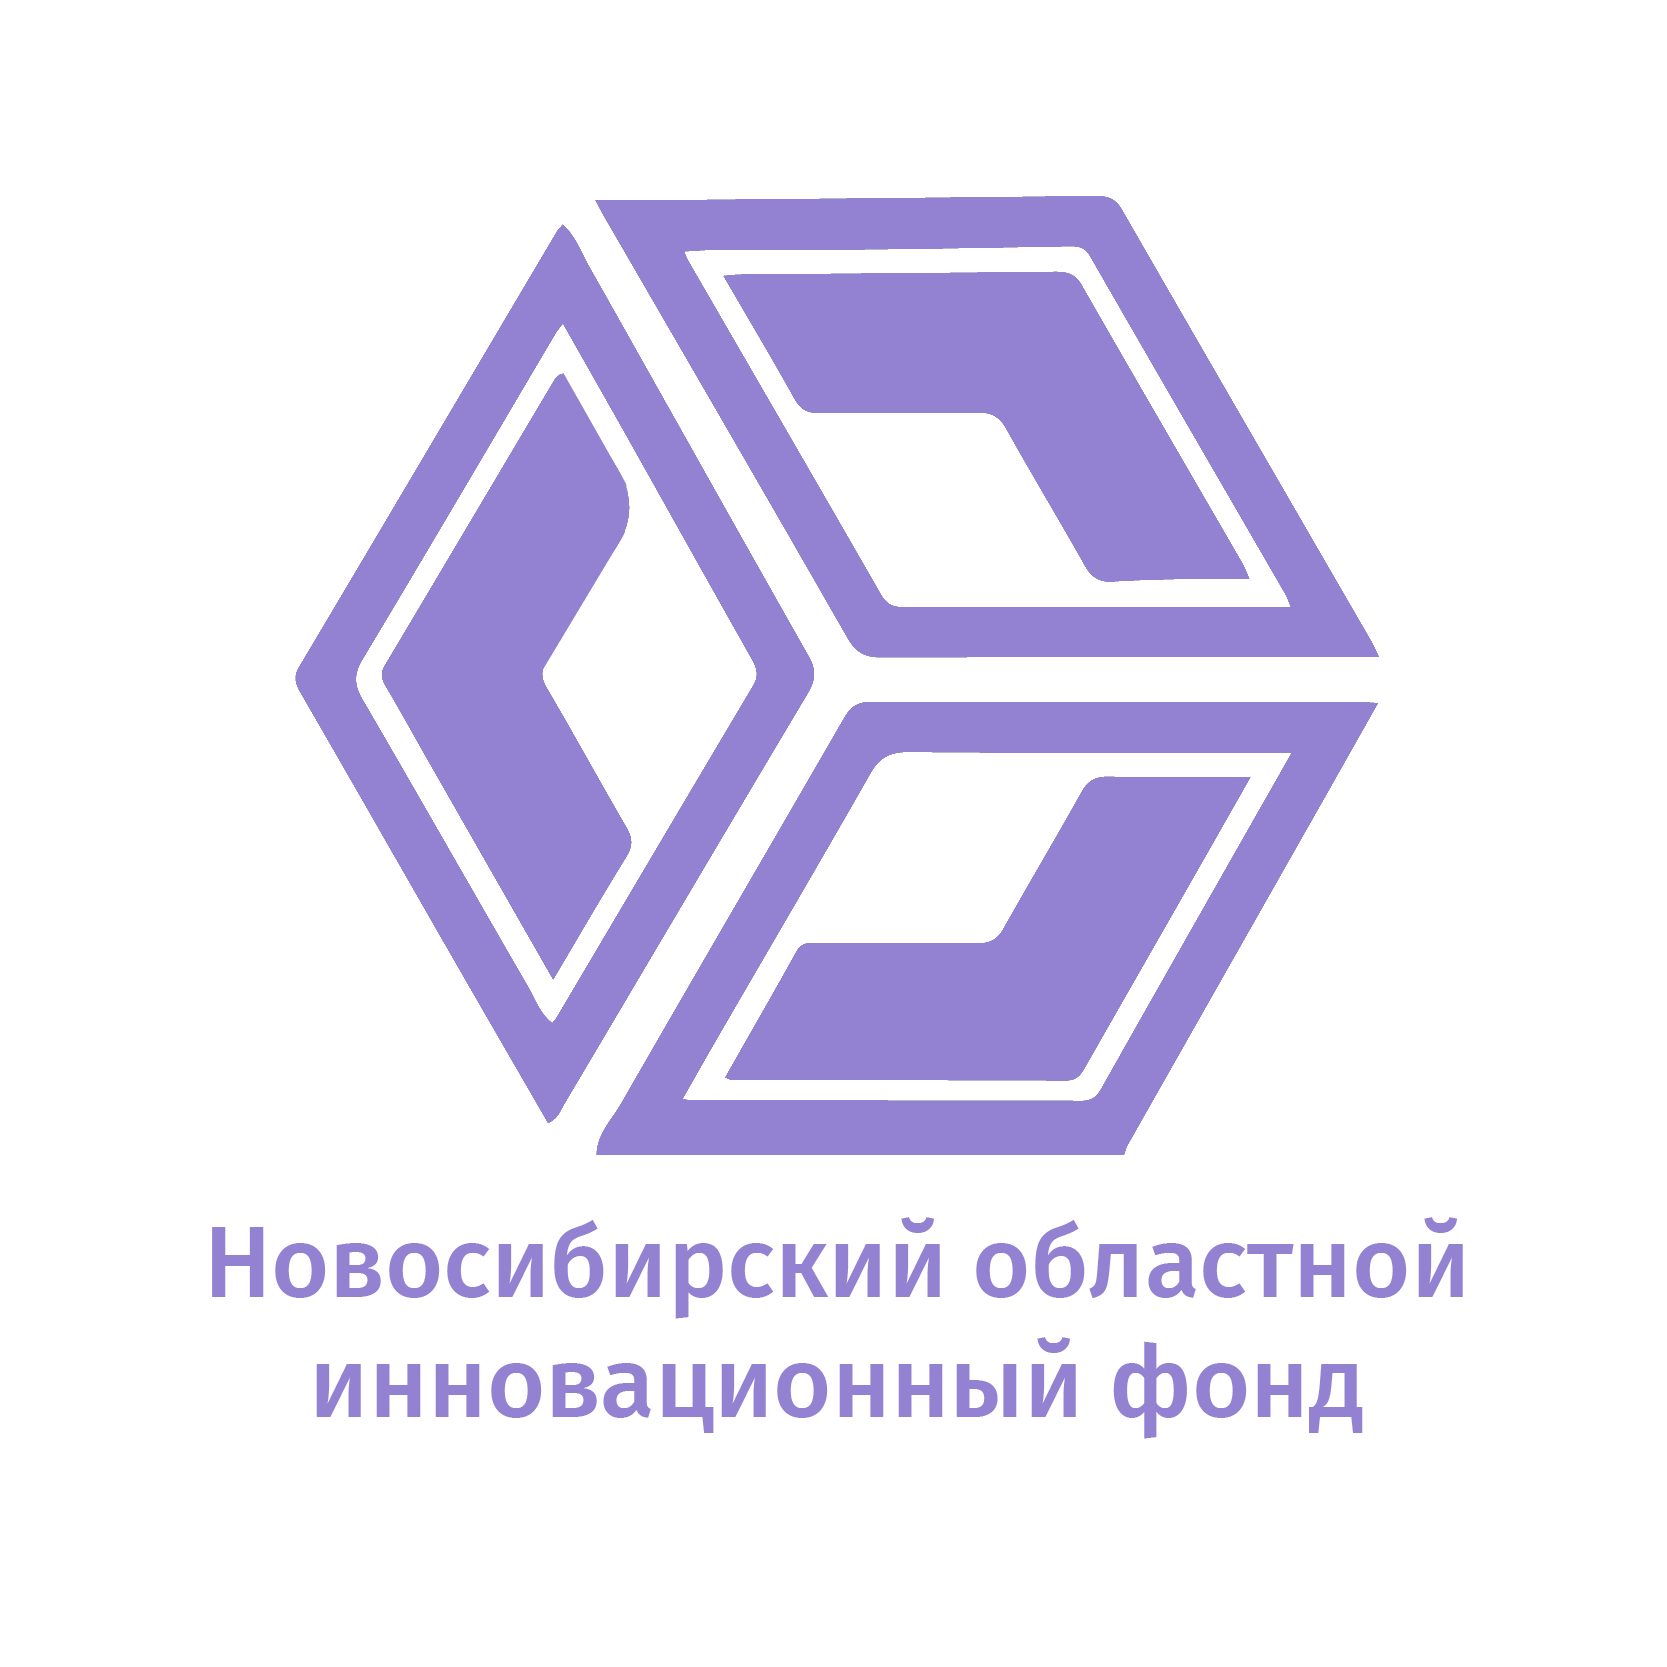 ГАУ НСО Новосибирский областной инновационный фонд